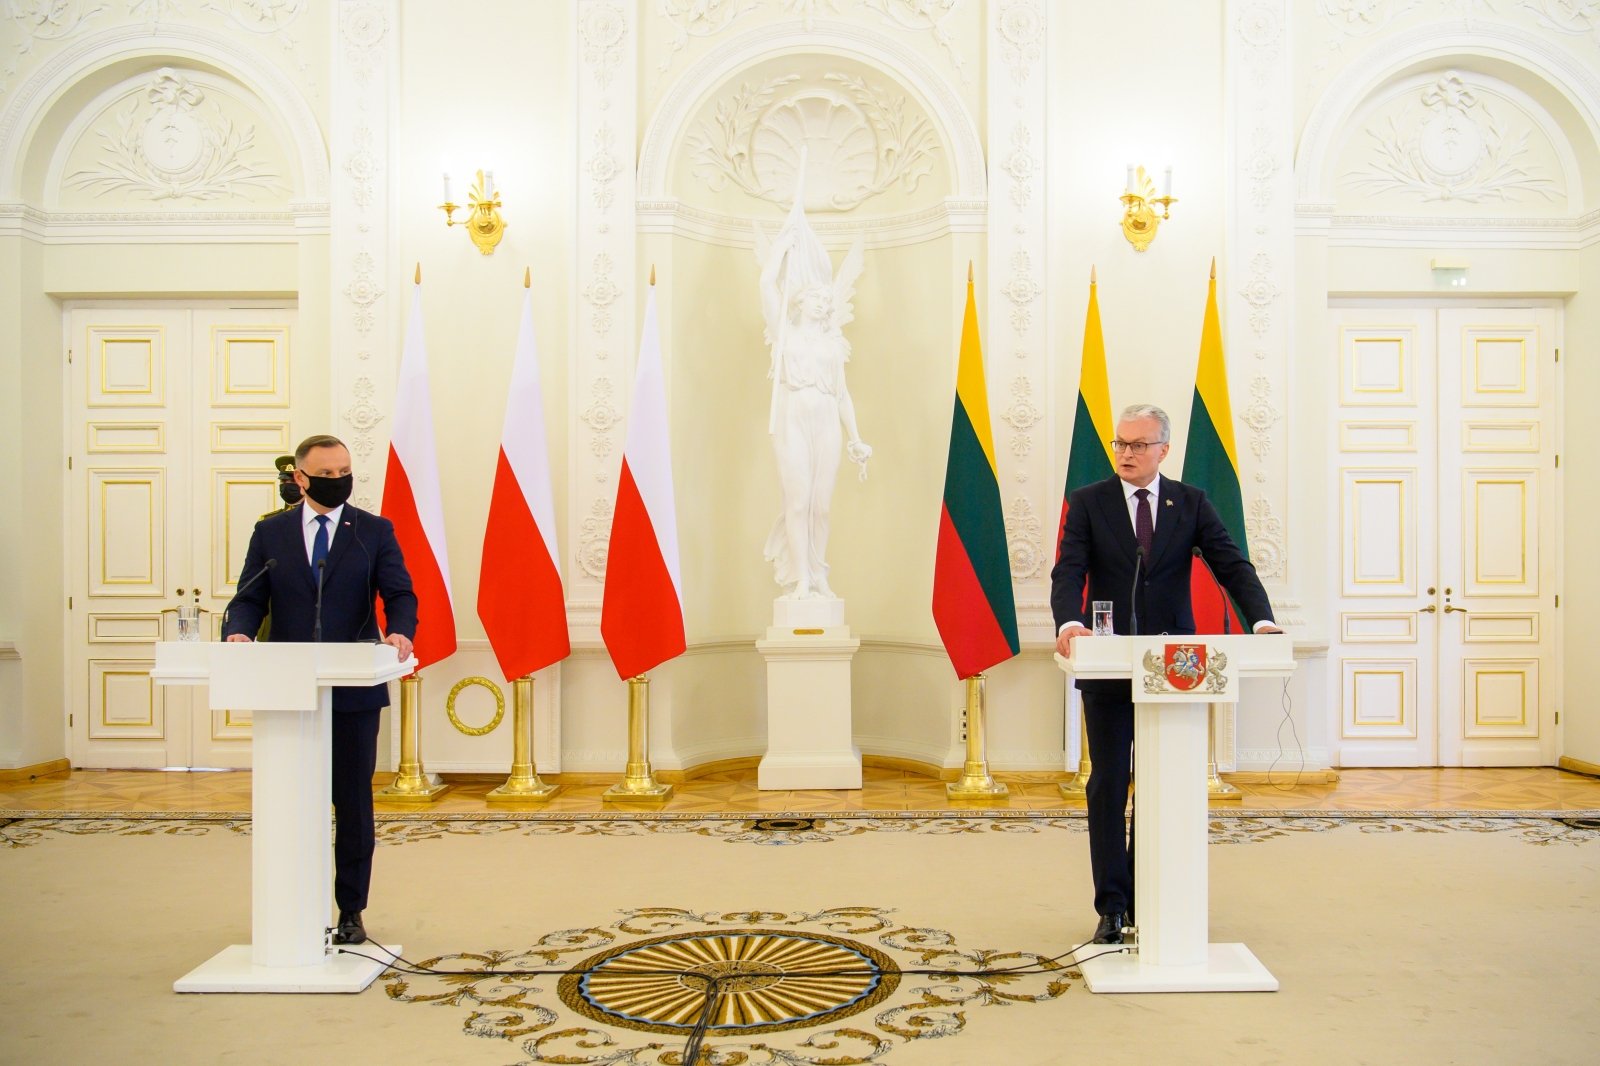 Prezydent Polski dla Litwinów: Już nigdy nie będziemy zwykłymi sąsiadami